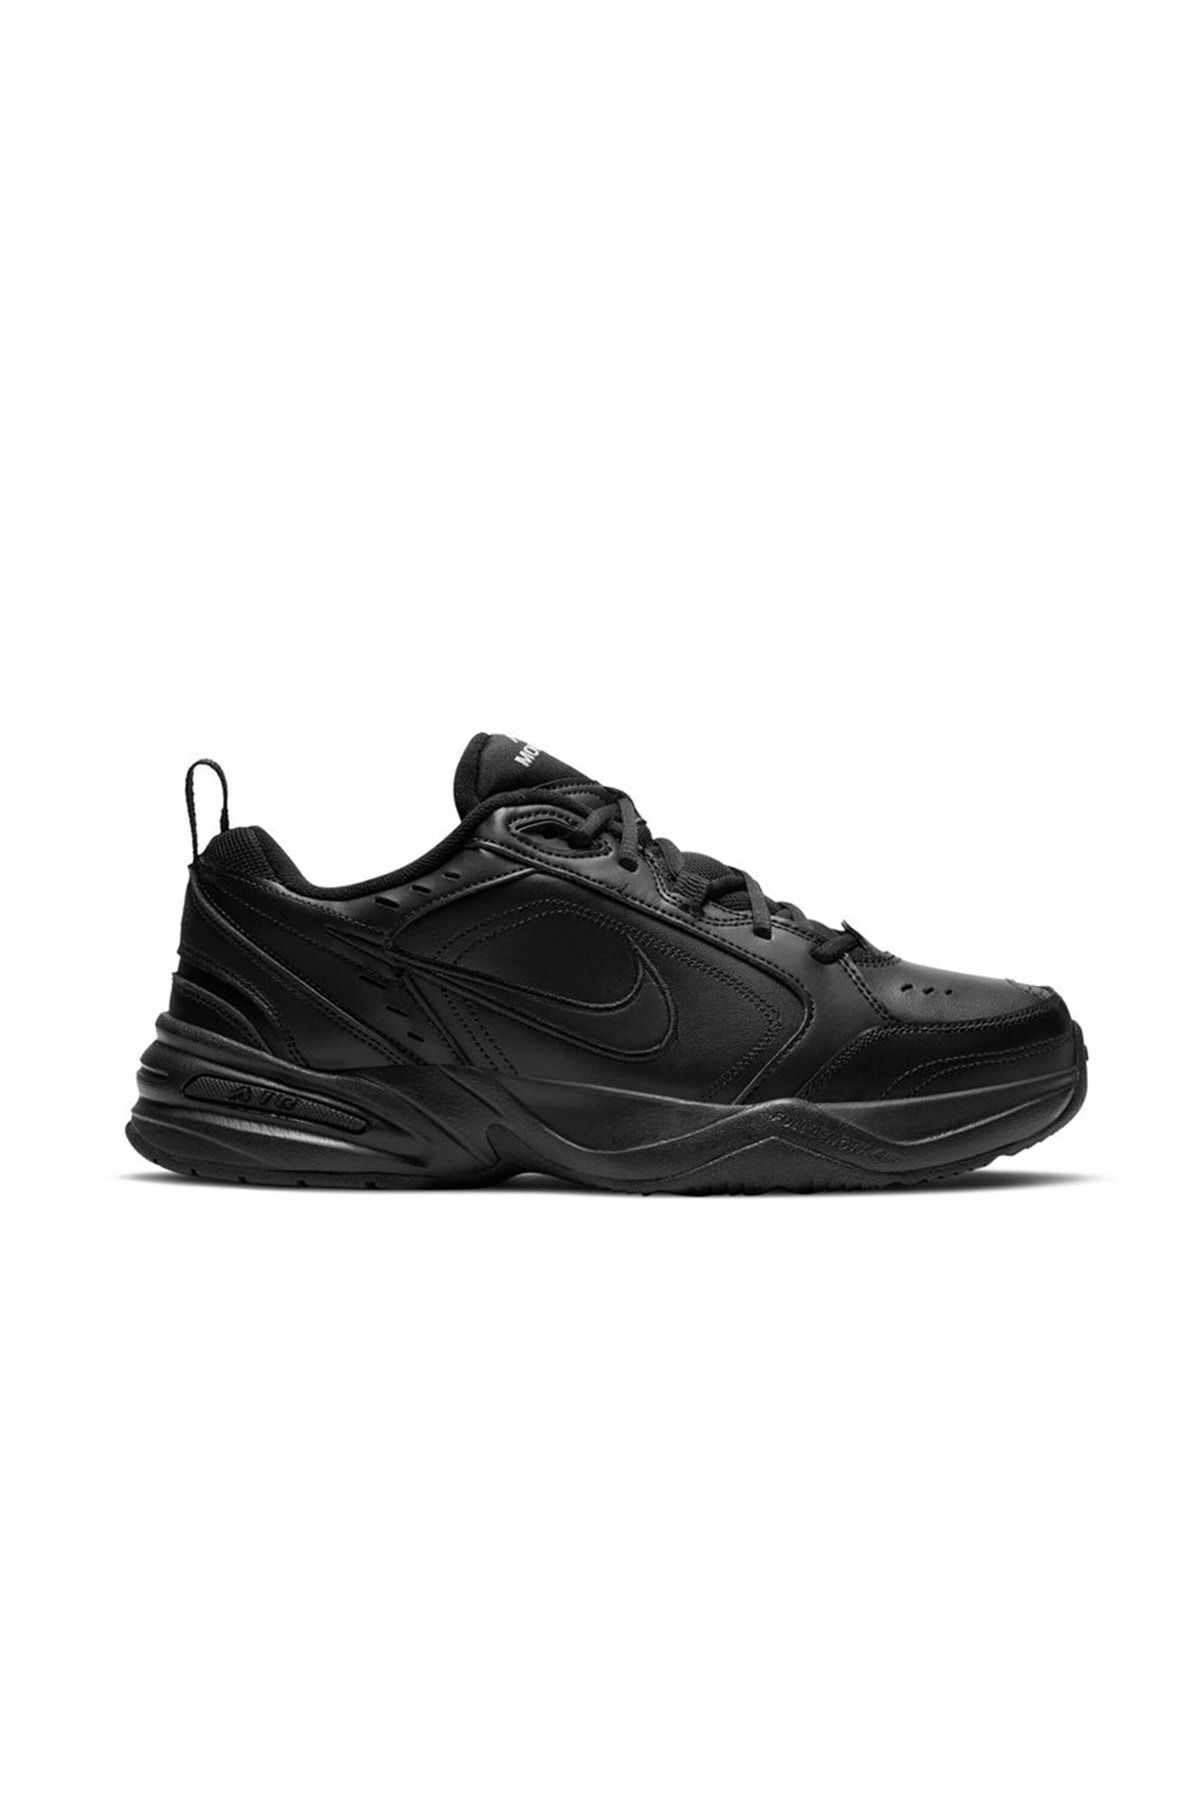 Nike Aır Monarch Iv Erkek Spor Ayakkabı Siyah